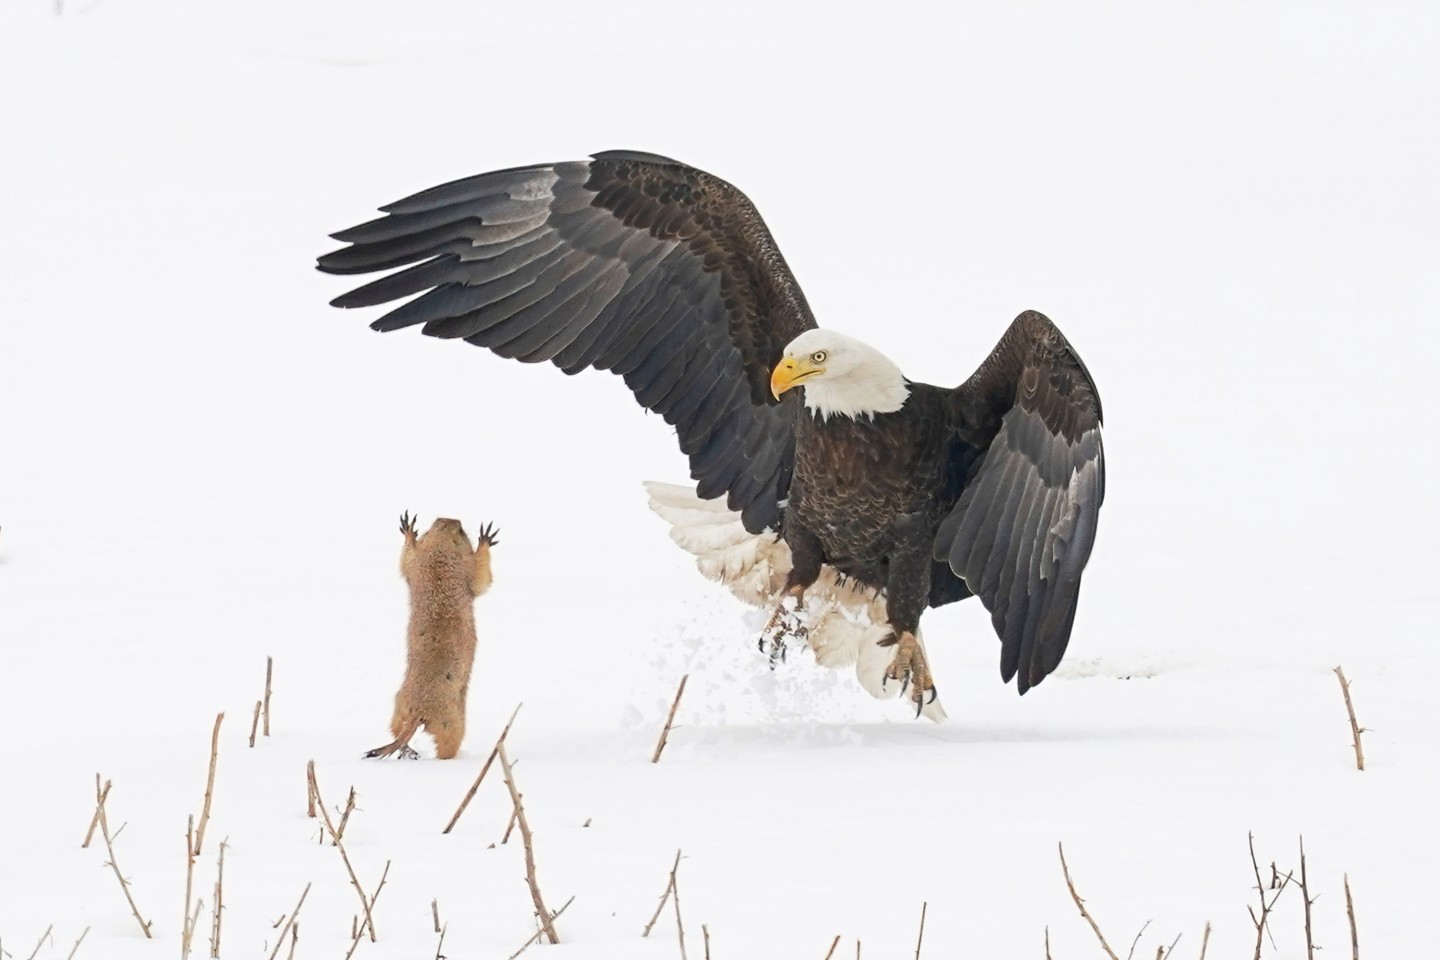 "Луговая собачка - Ниндзя! ". (Белоголовый орлан в Колорадо, США). Фото:  © Arthur Trevino / Comedy Wildlife Photography Awards 2021